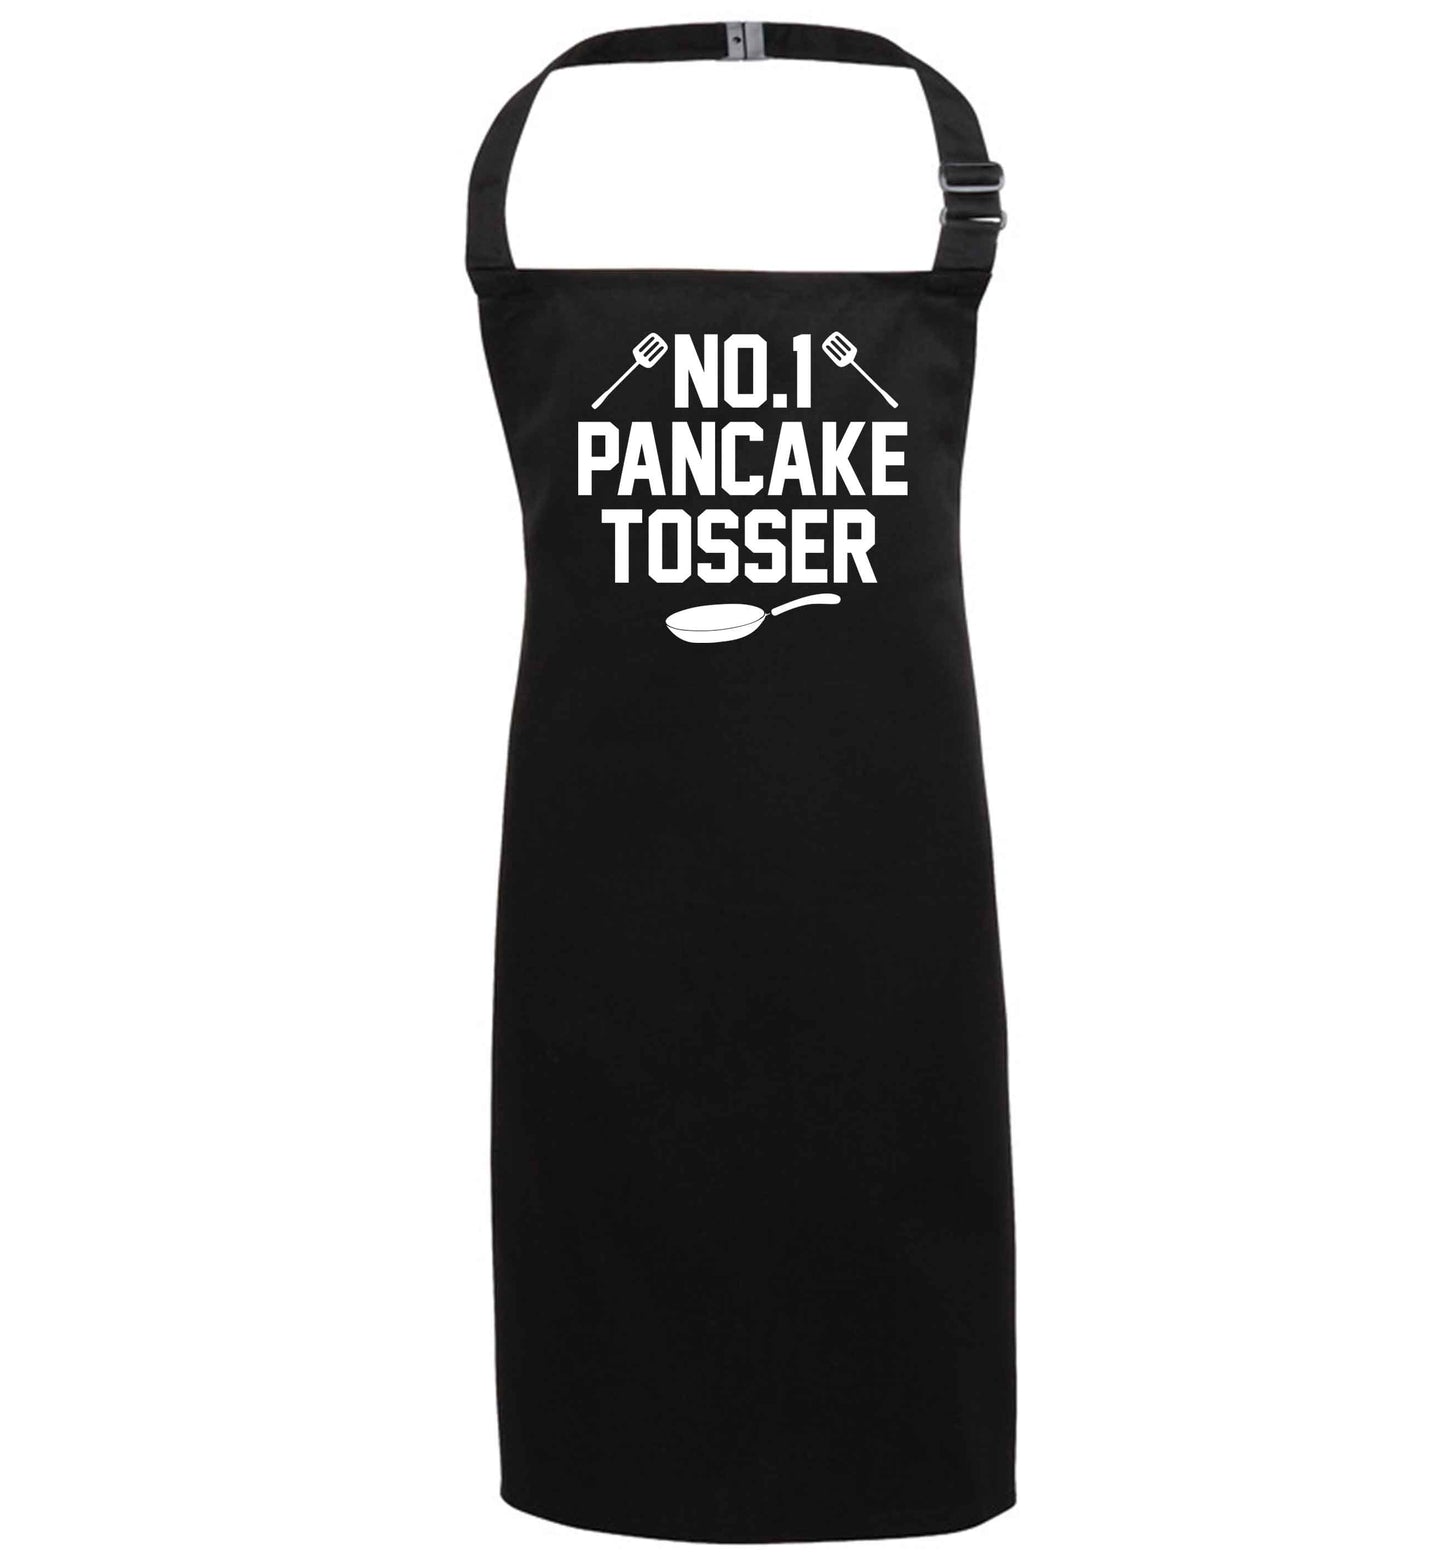 No.1 Pancake tosser black apron 7-10 years